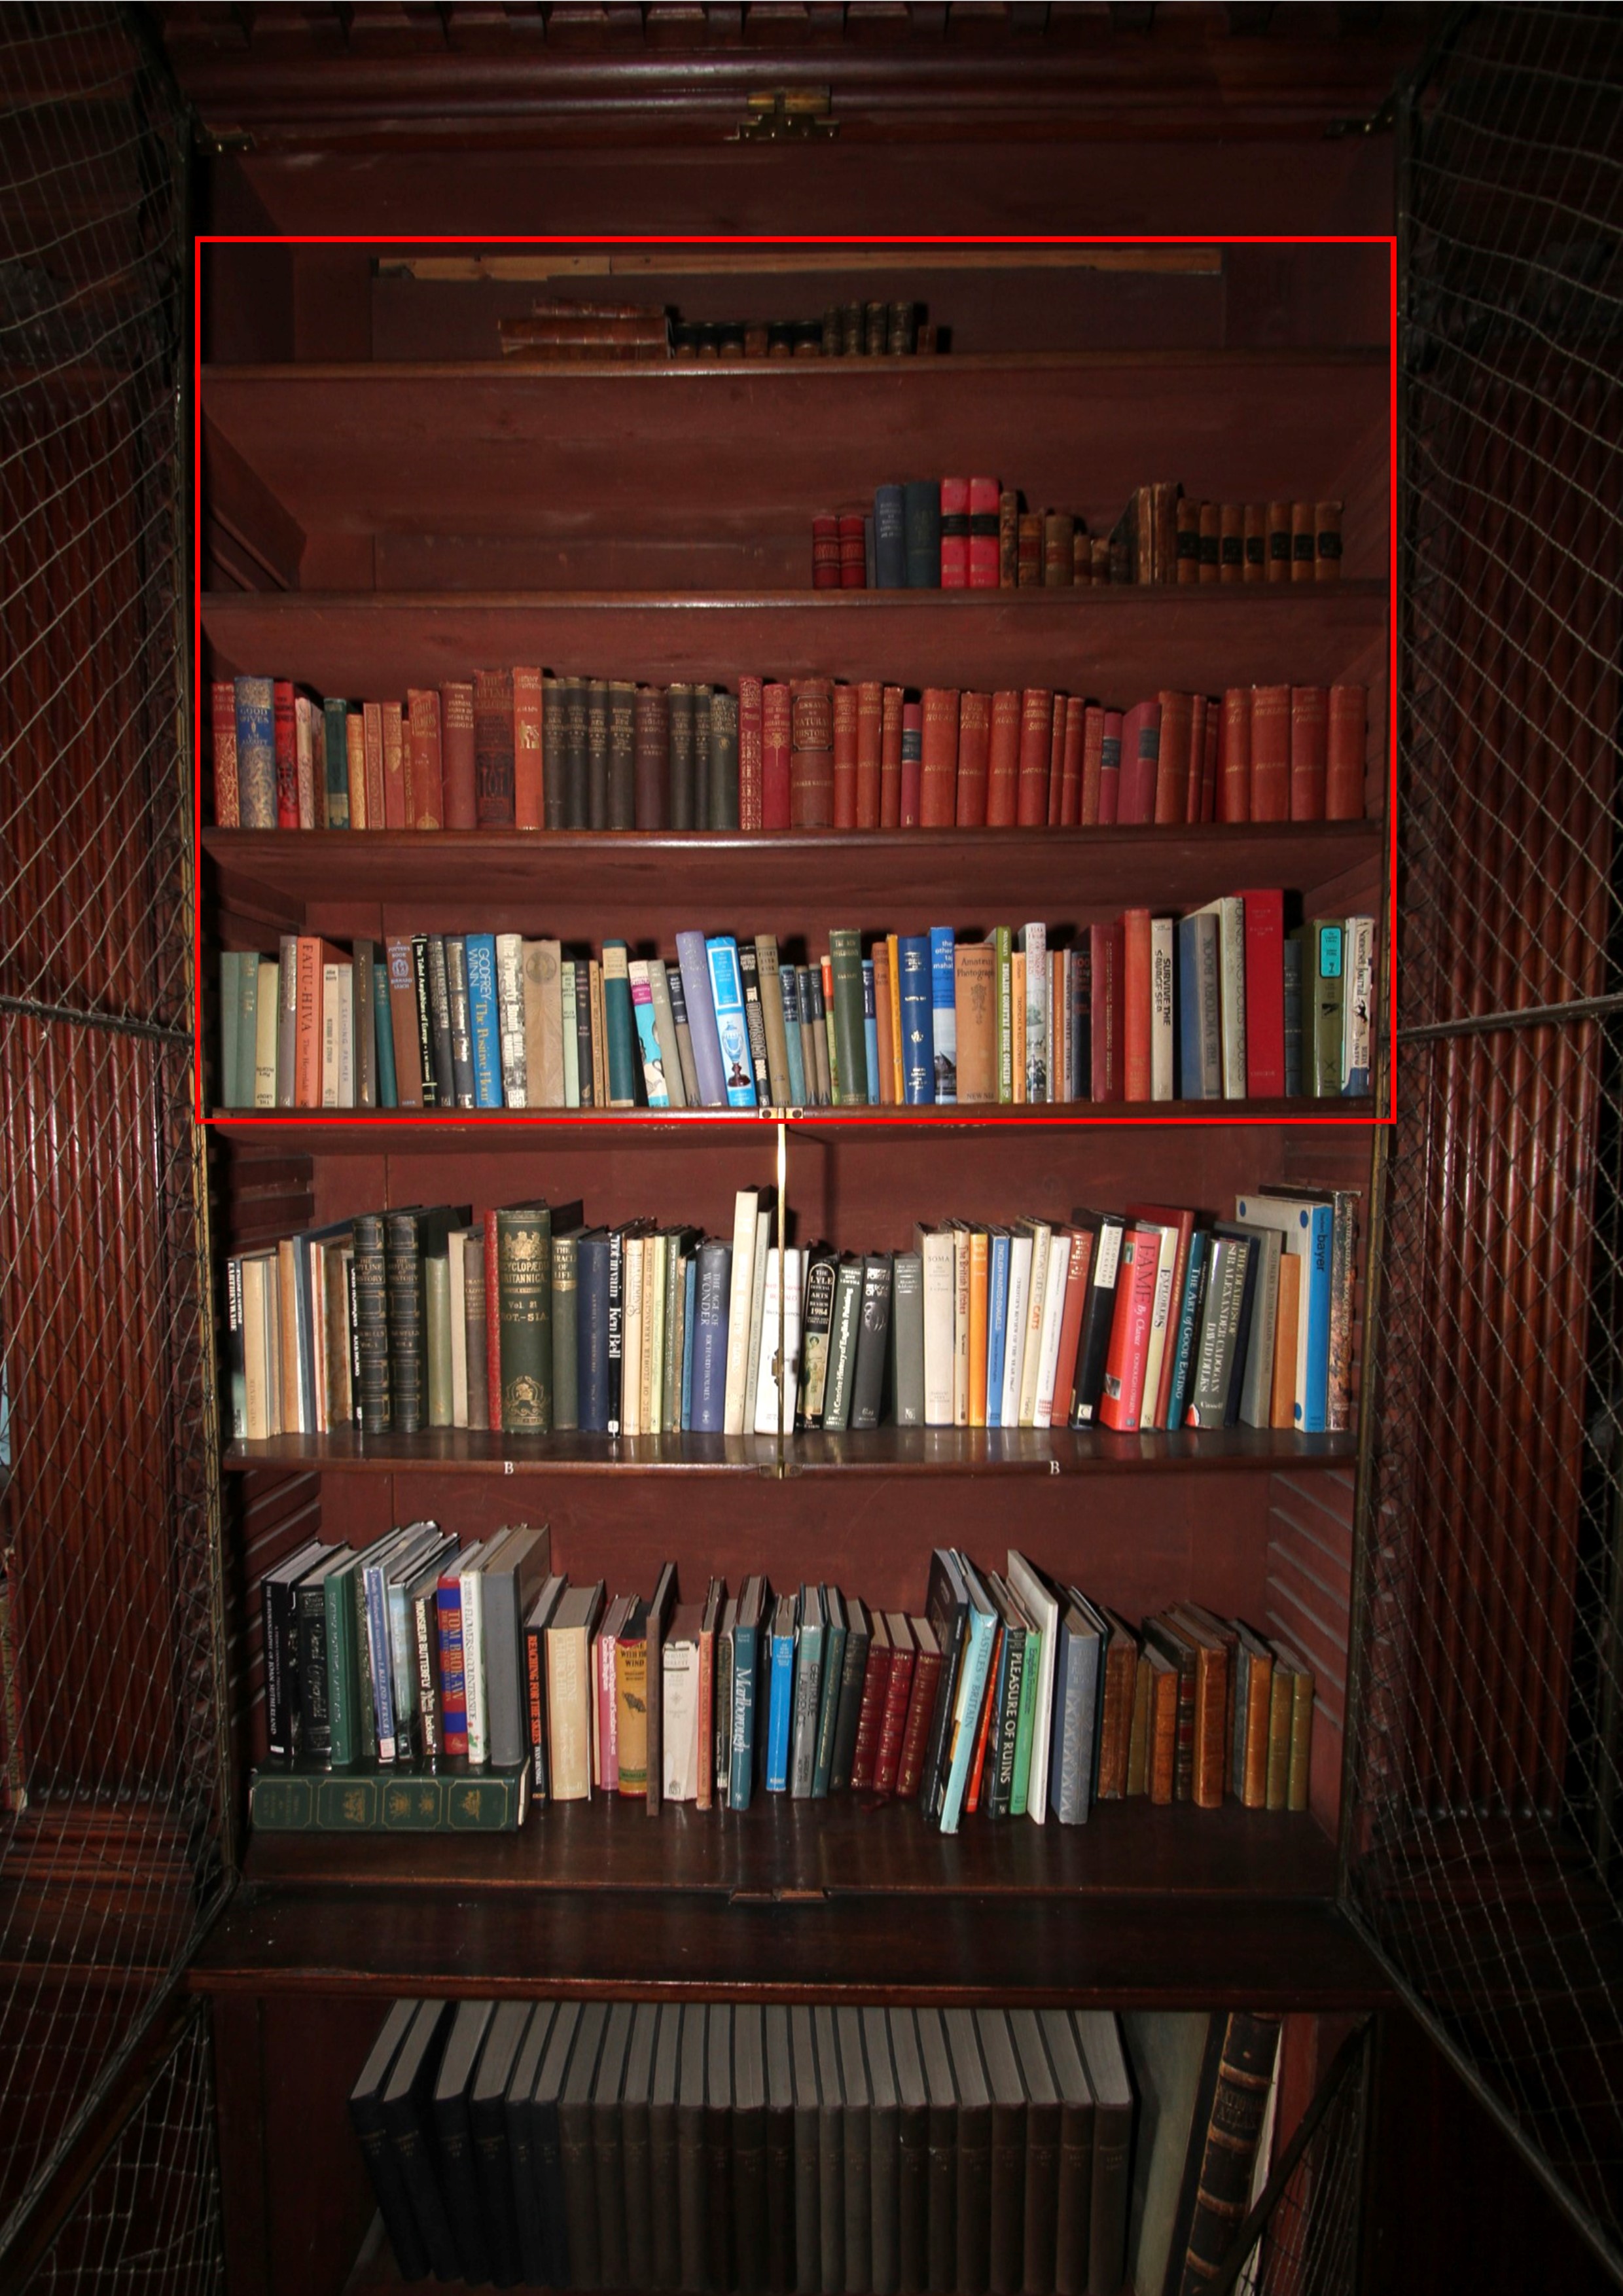 An assortment of books.